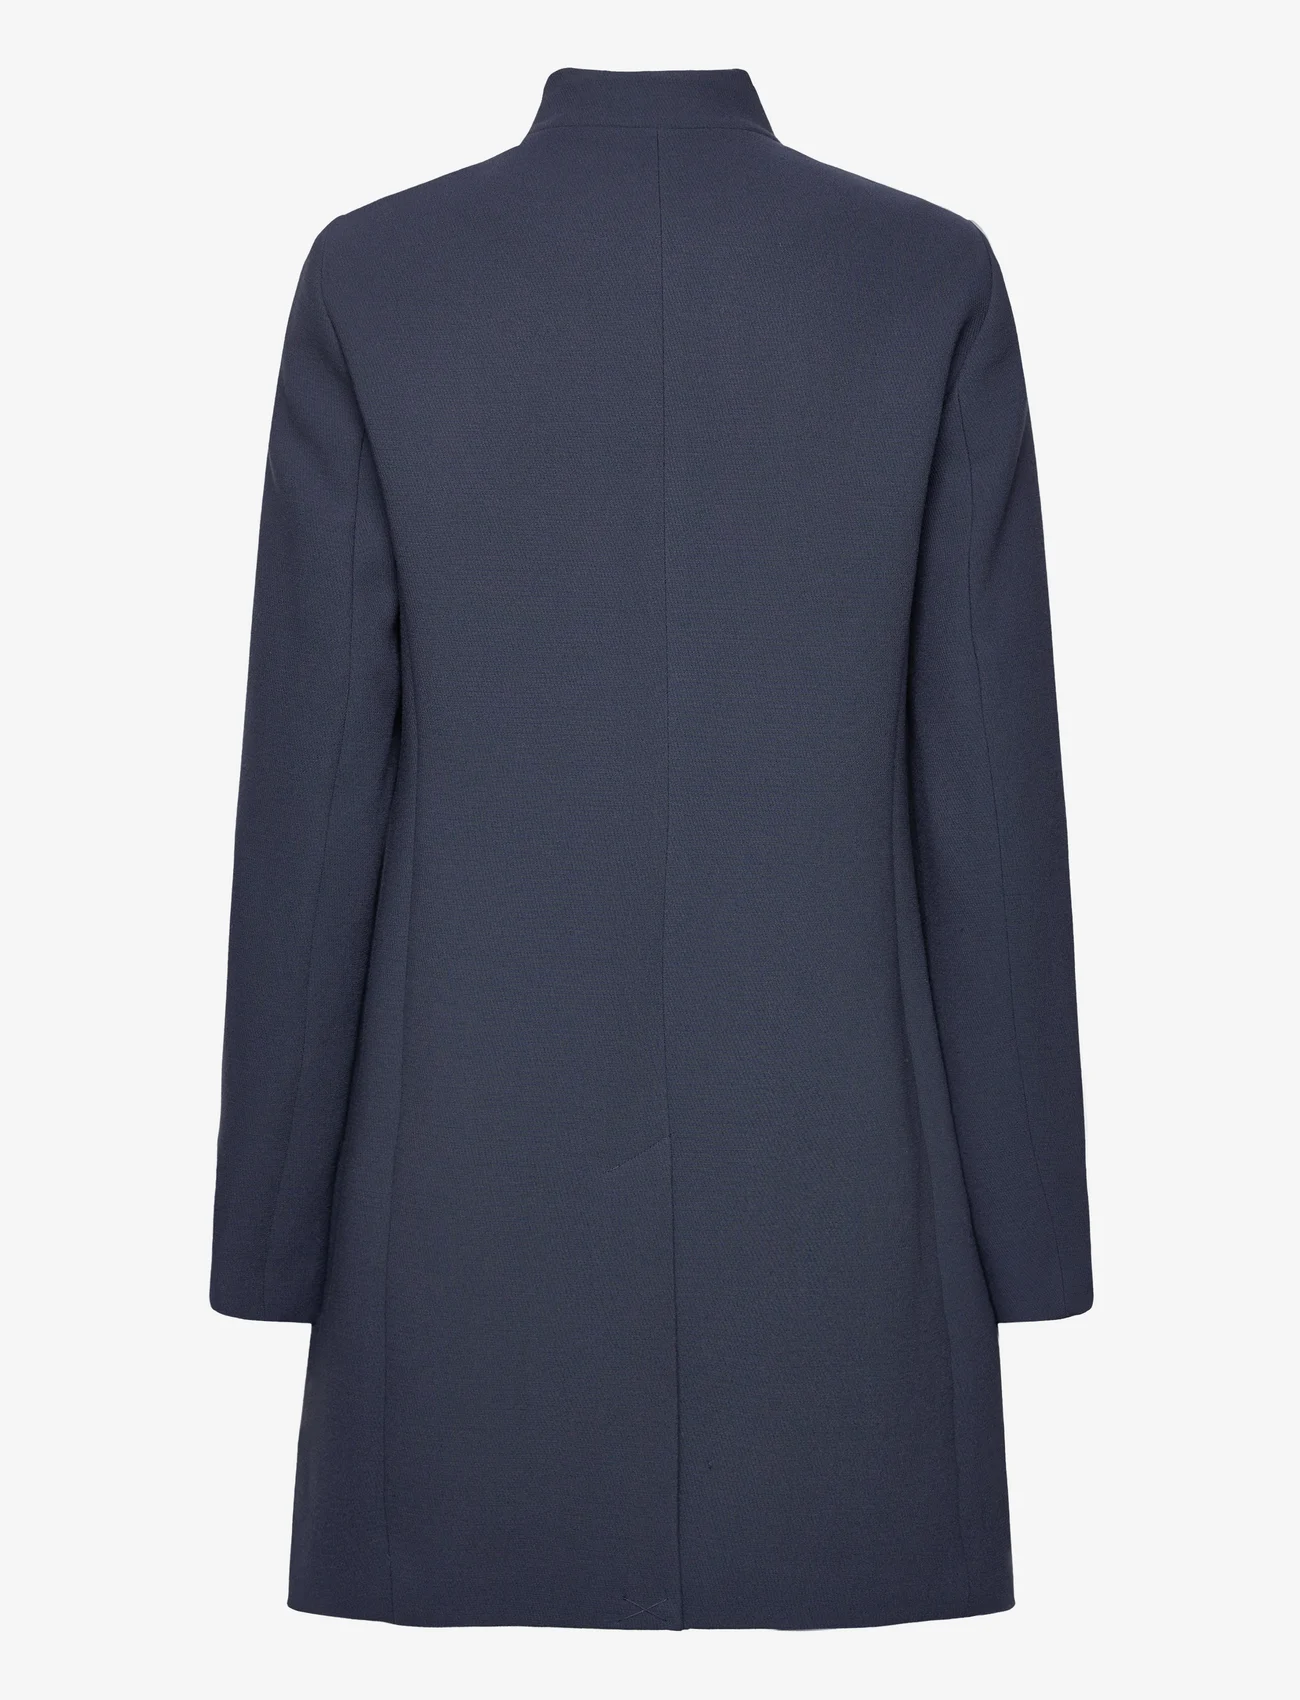 Esprit Casual - Coats woven - light coats - navy - 1